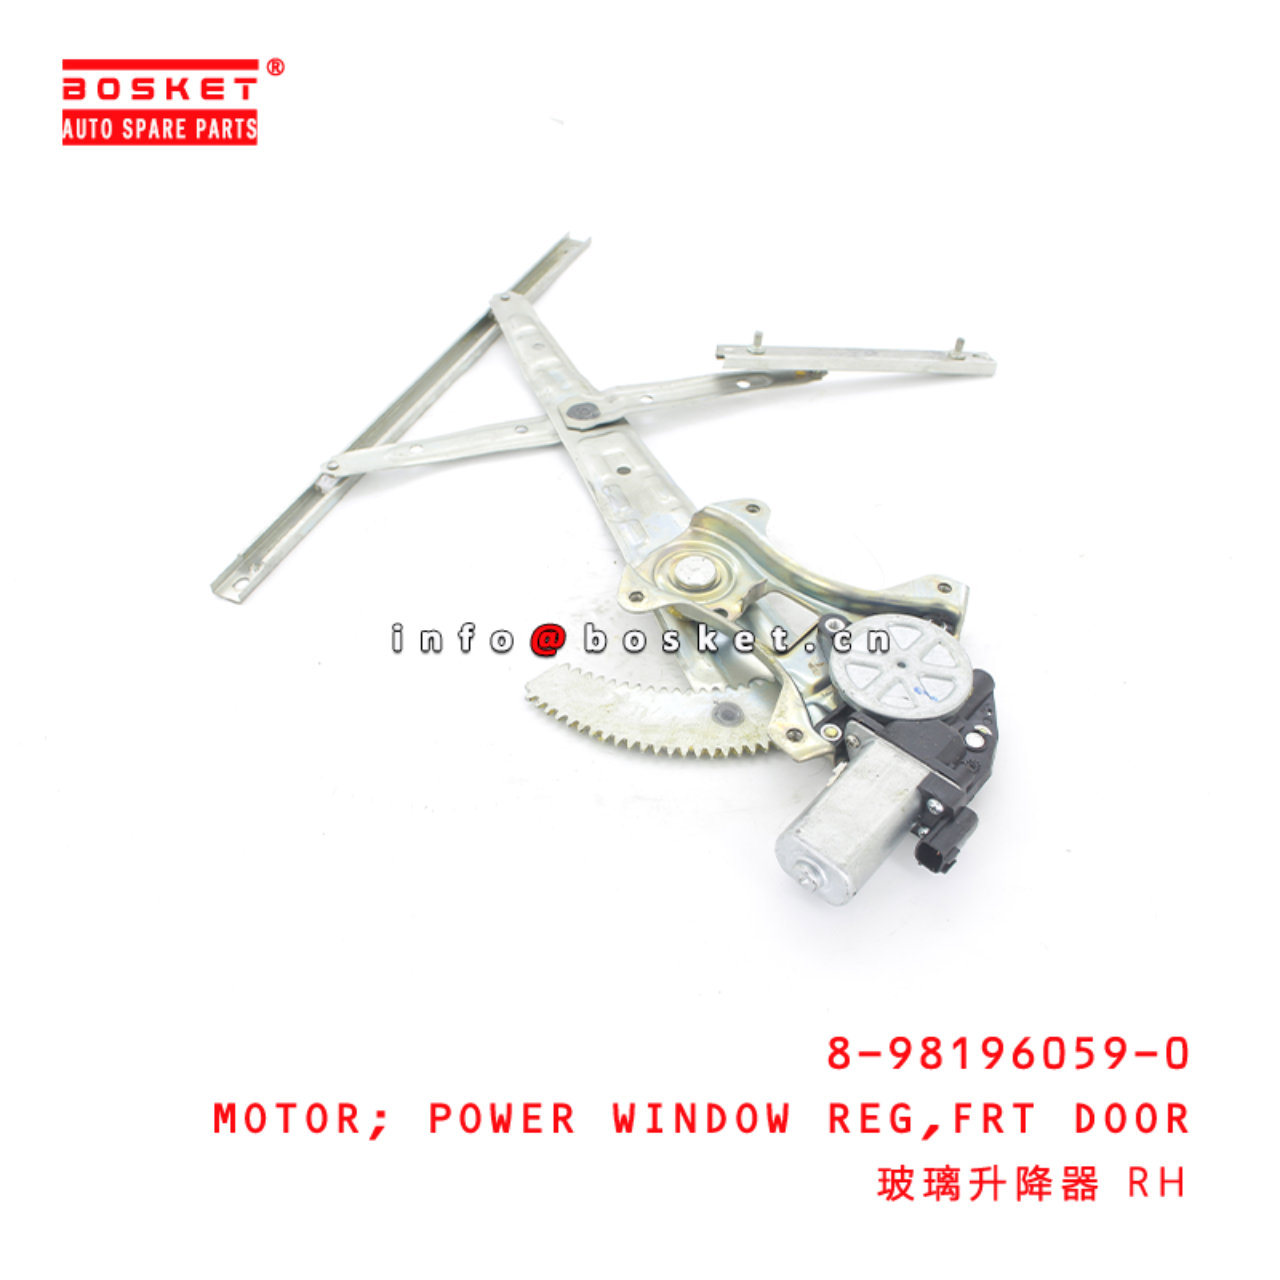 8-98196059-0 Front Door Power Window Regulator Motor Suitable for ISUZU D-MAX  8981960590